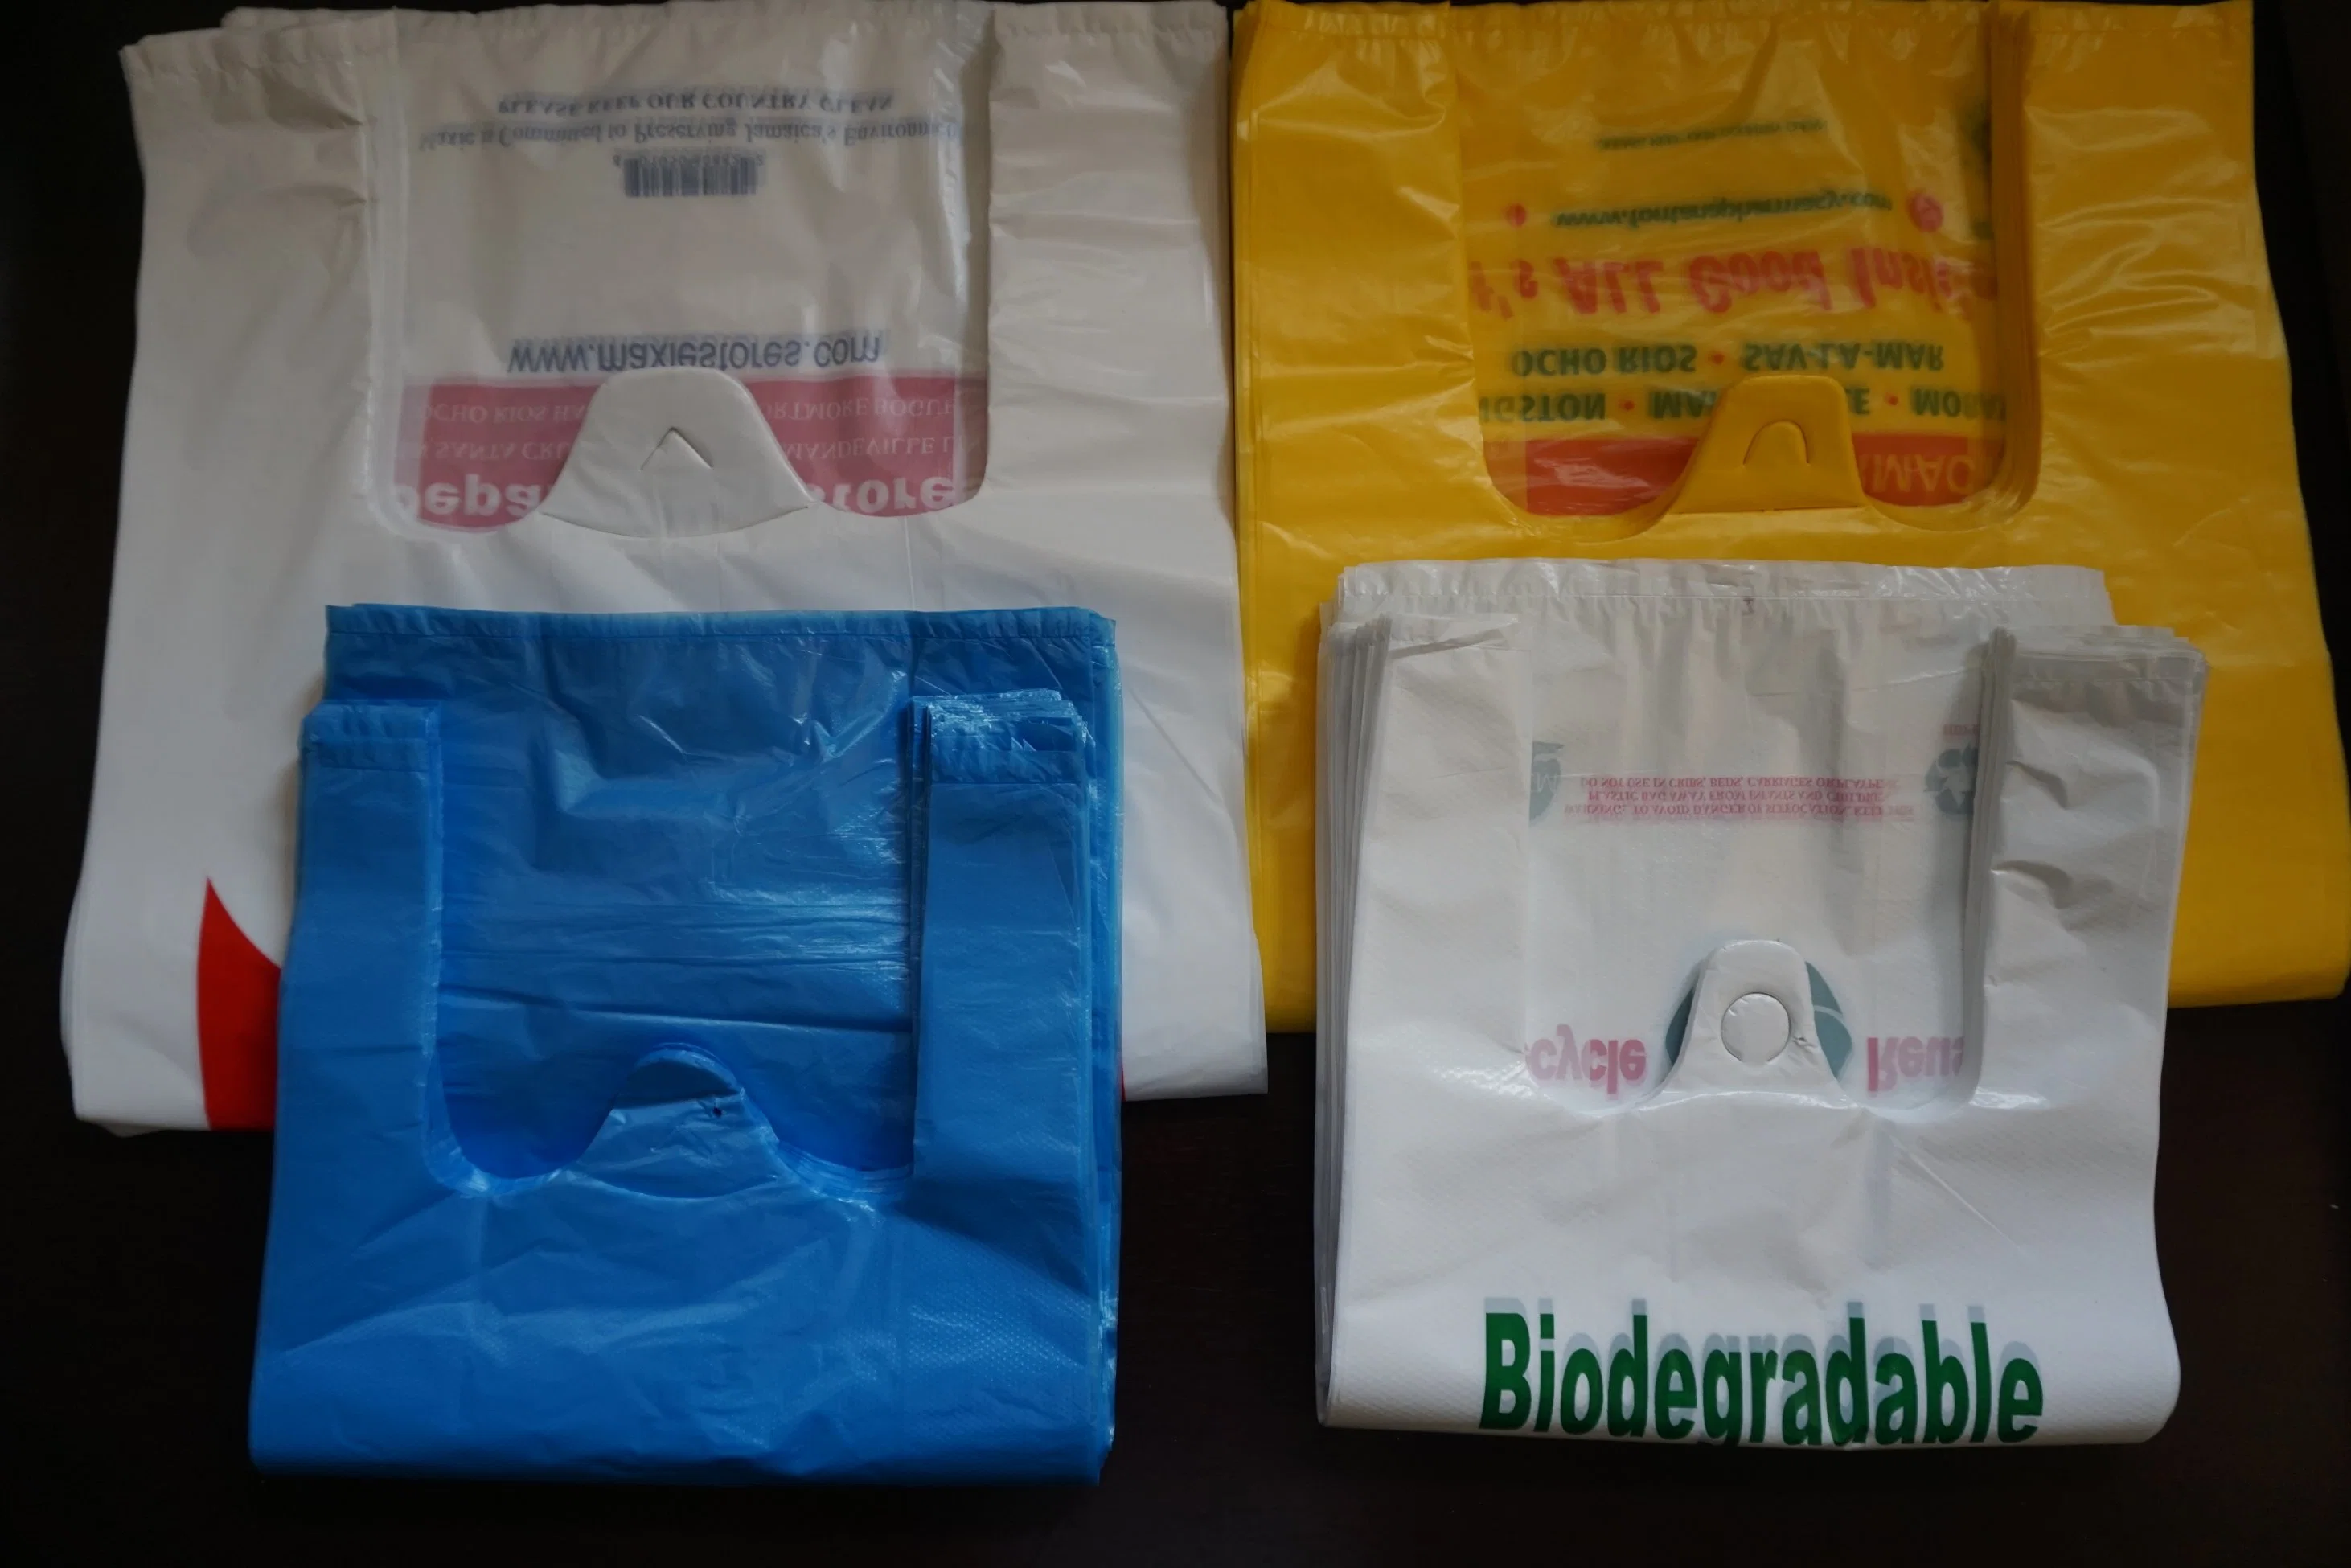 Polyester Shopping Bag, Shopping Bag, Foldable Bag, Promotional Bag, Gift Bag, Promotion Bag, Vest Shopping Bag, Drawstring Bag